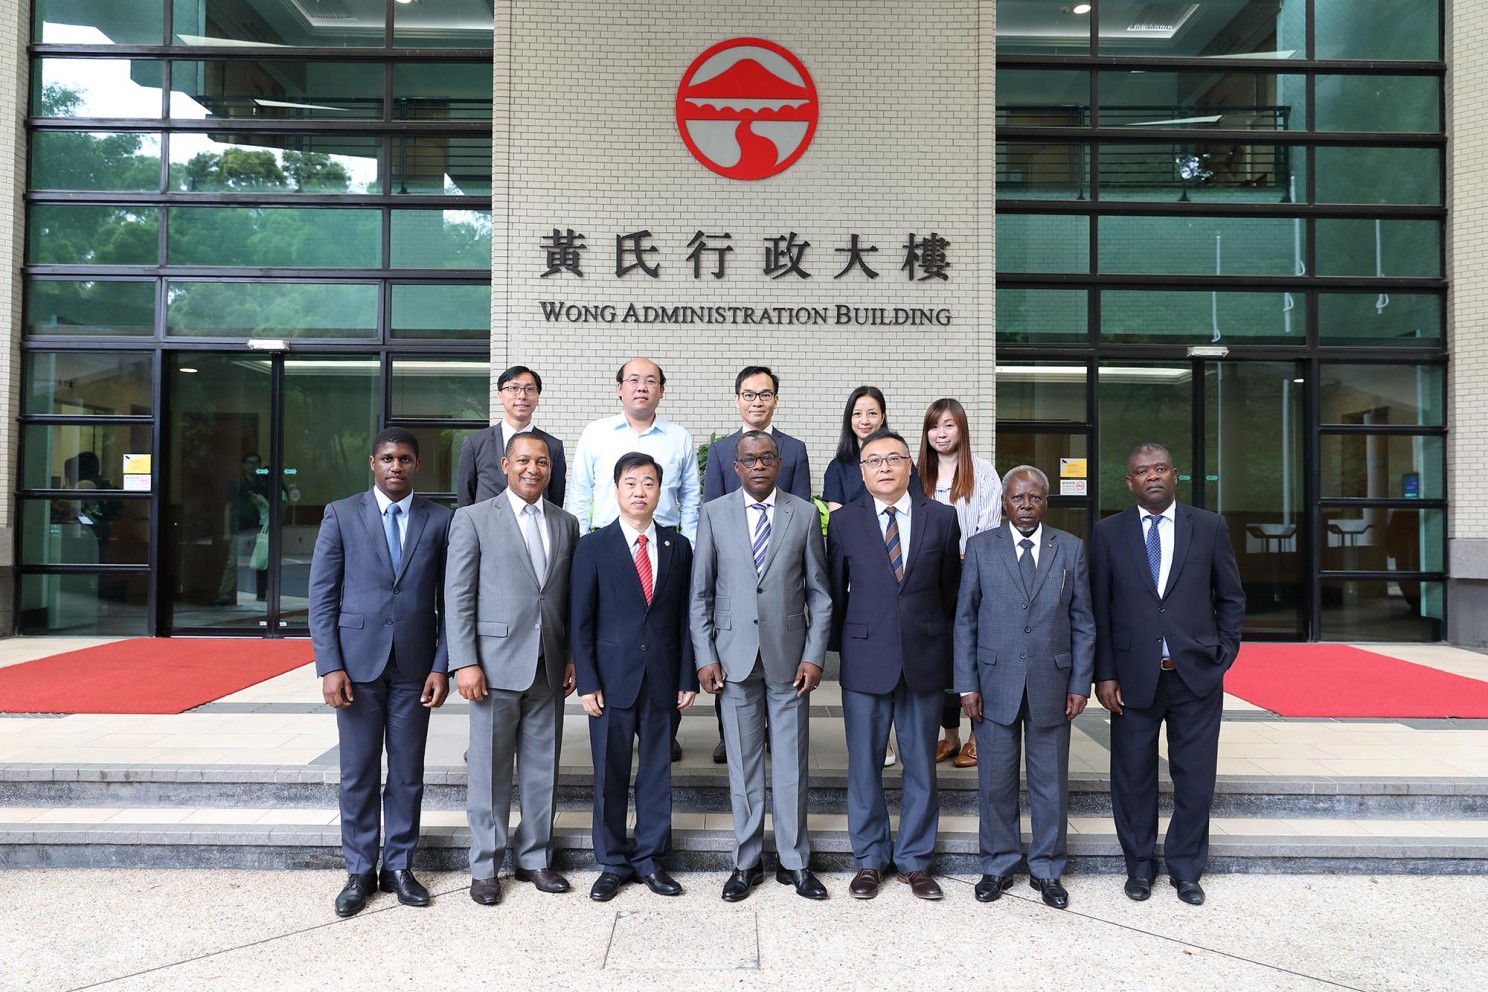 Angola Ambassador to China and Consul General in Hong Kong visit Lingnan University